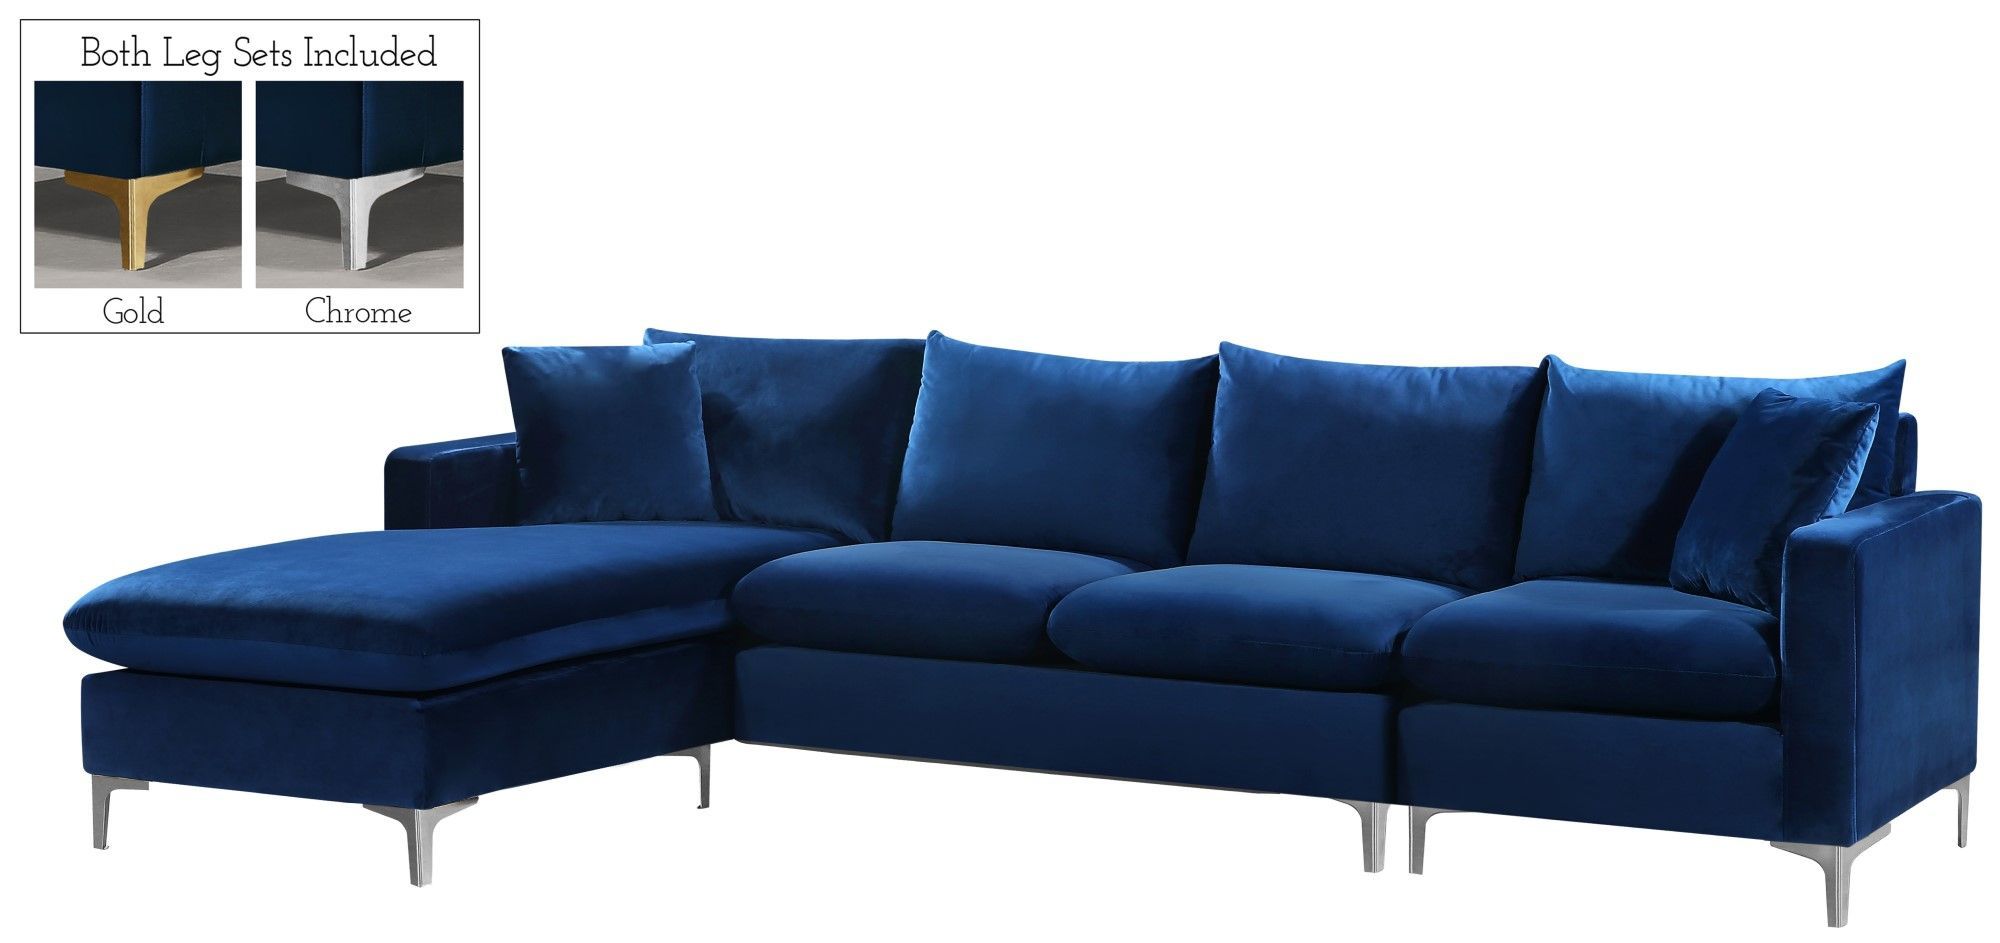 Selene Contemporary Plush Navy Blue Velvet Sectional Sofa Intended For French Seamed Sectional Sofas In Velvet (View 11 of 15)